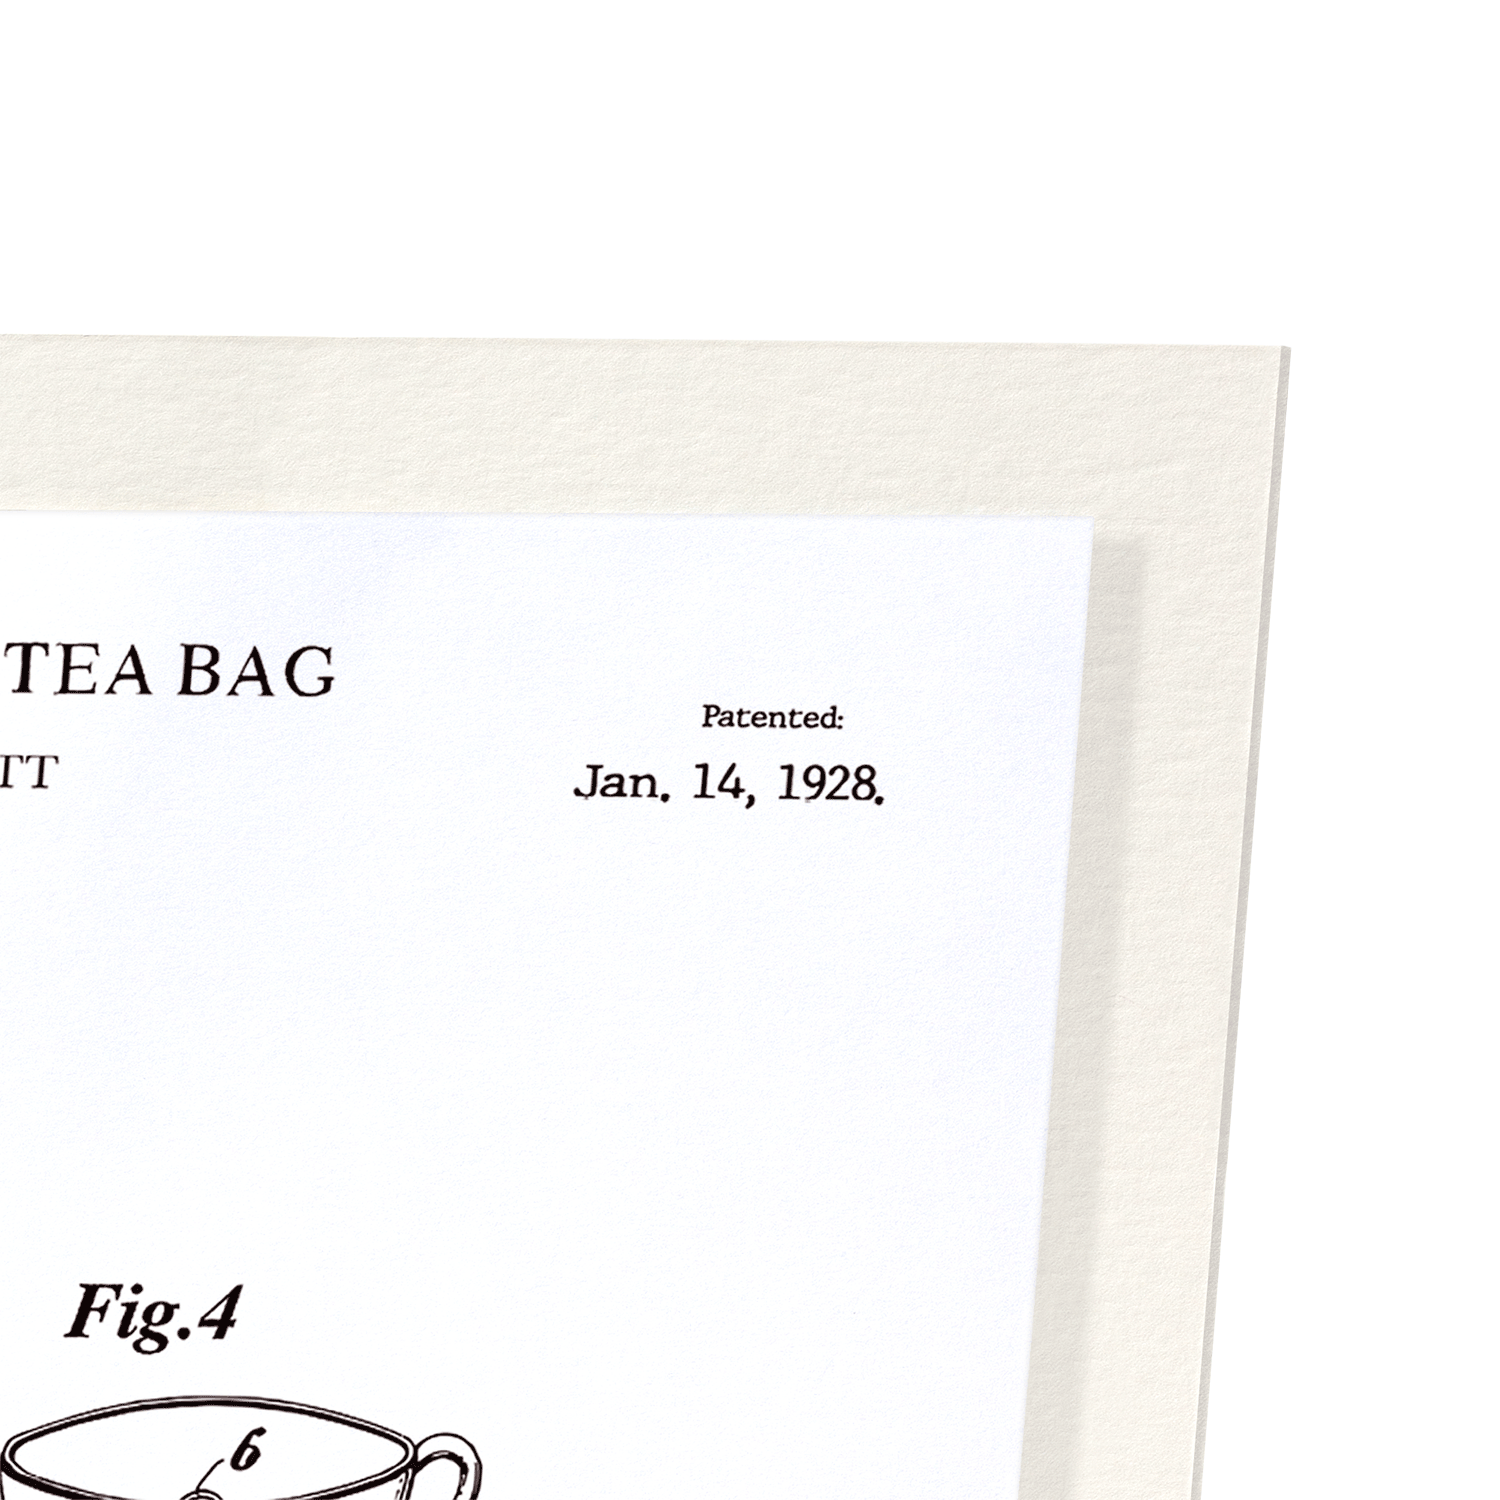 PATENT OF INDIVIDUAL TEA BAG (1928)